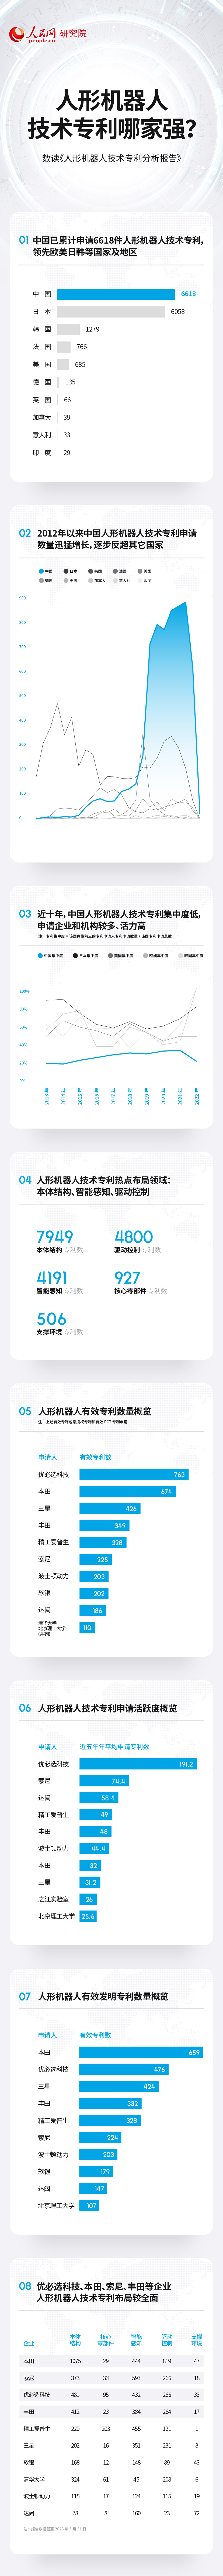 安信121980：技术专利总数居前列 中国人形机器人产业蓬勃发展